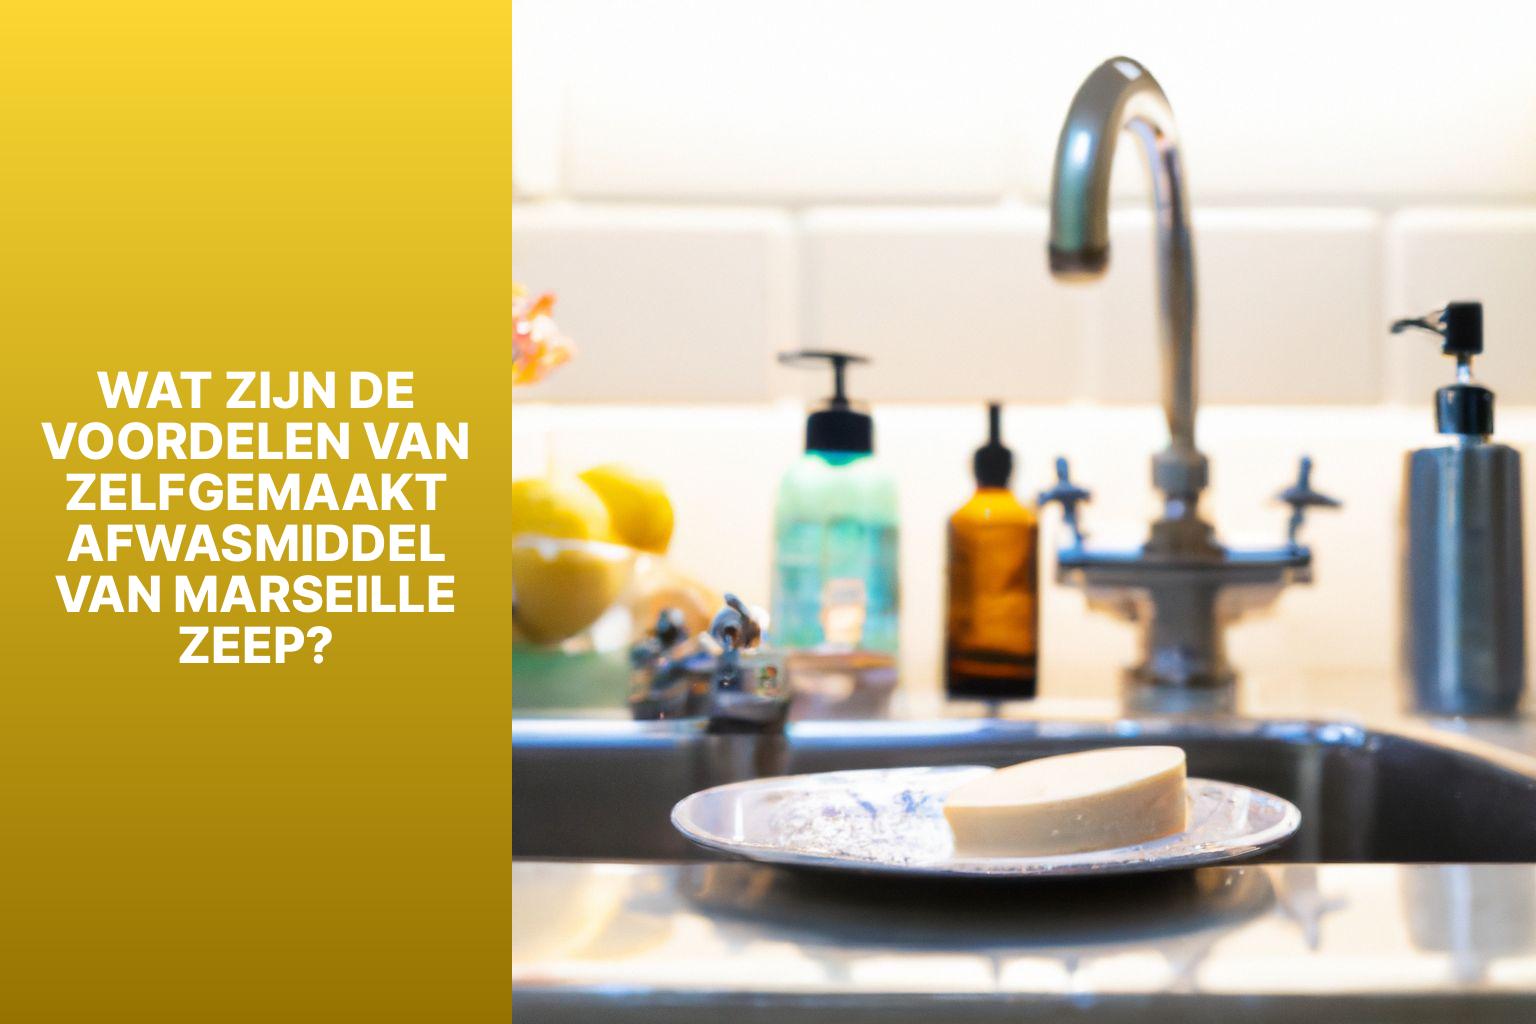 Wat zijn de voordelen van zelfgemaakt afwasmiddel van Marseillezeep? - Afwasmiddel maken van marseillezeep 